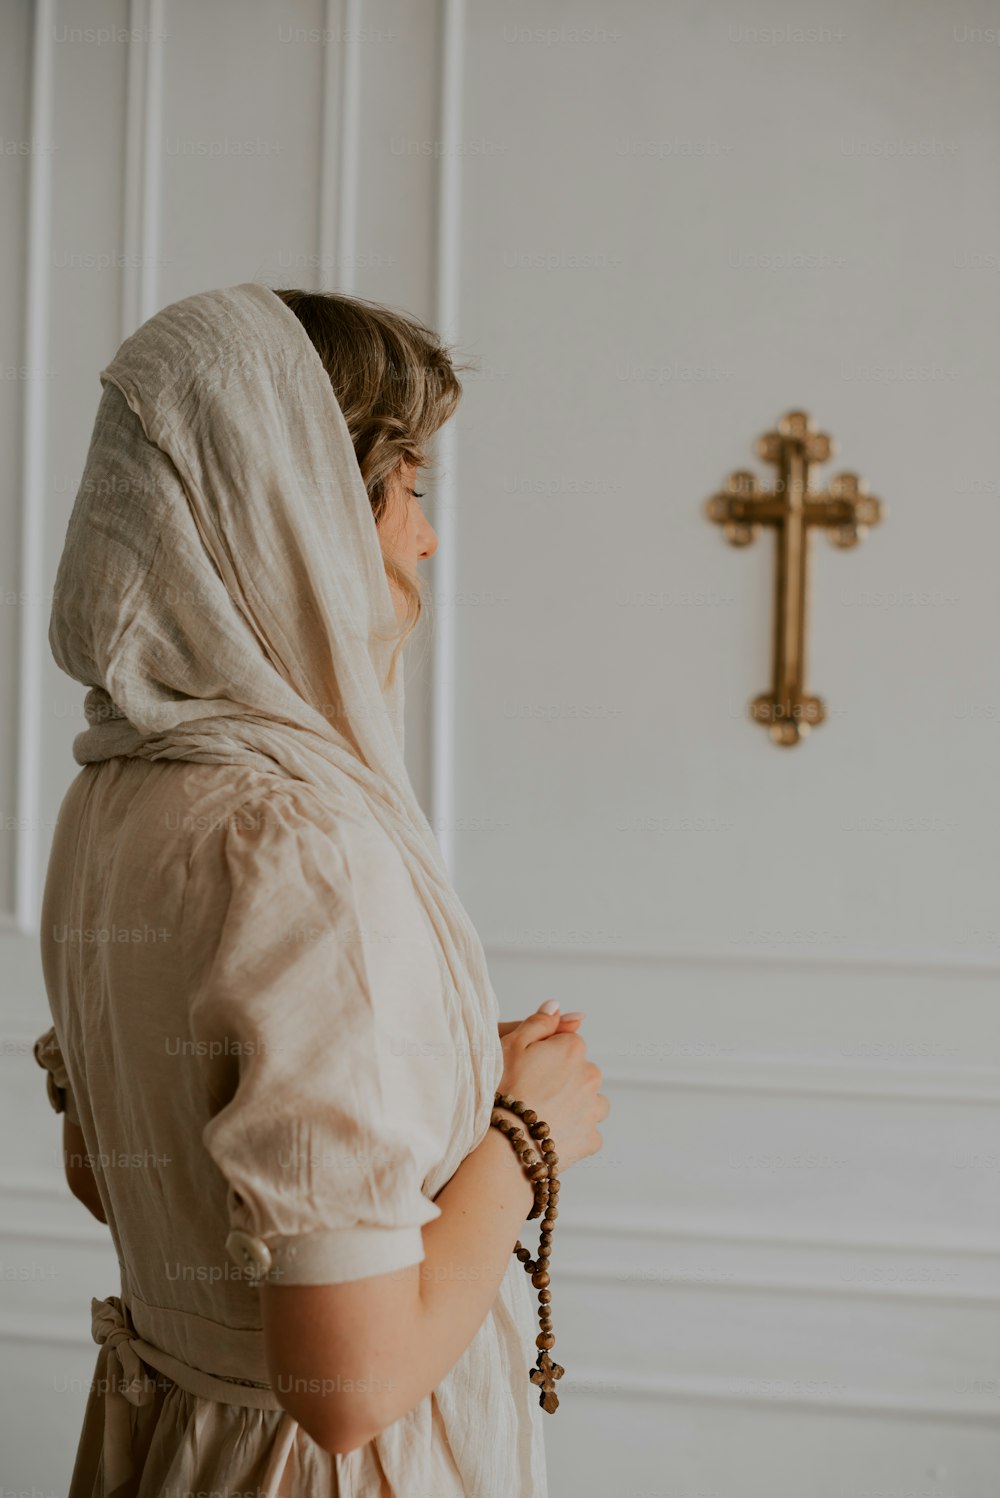 Eine Frau in einem weißen Kleid, die vor einem Kreuz steht